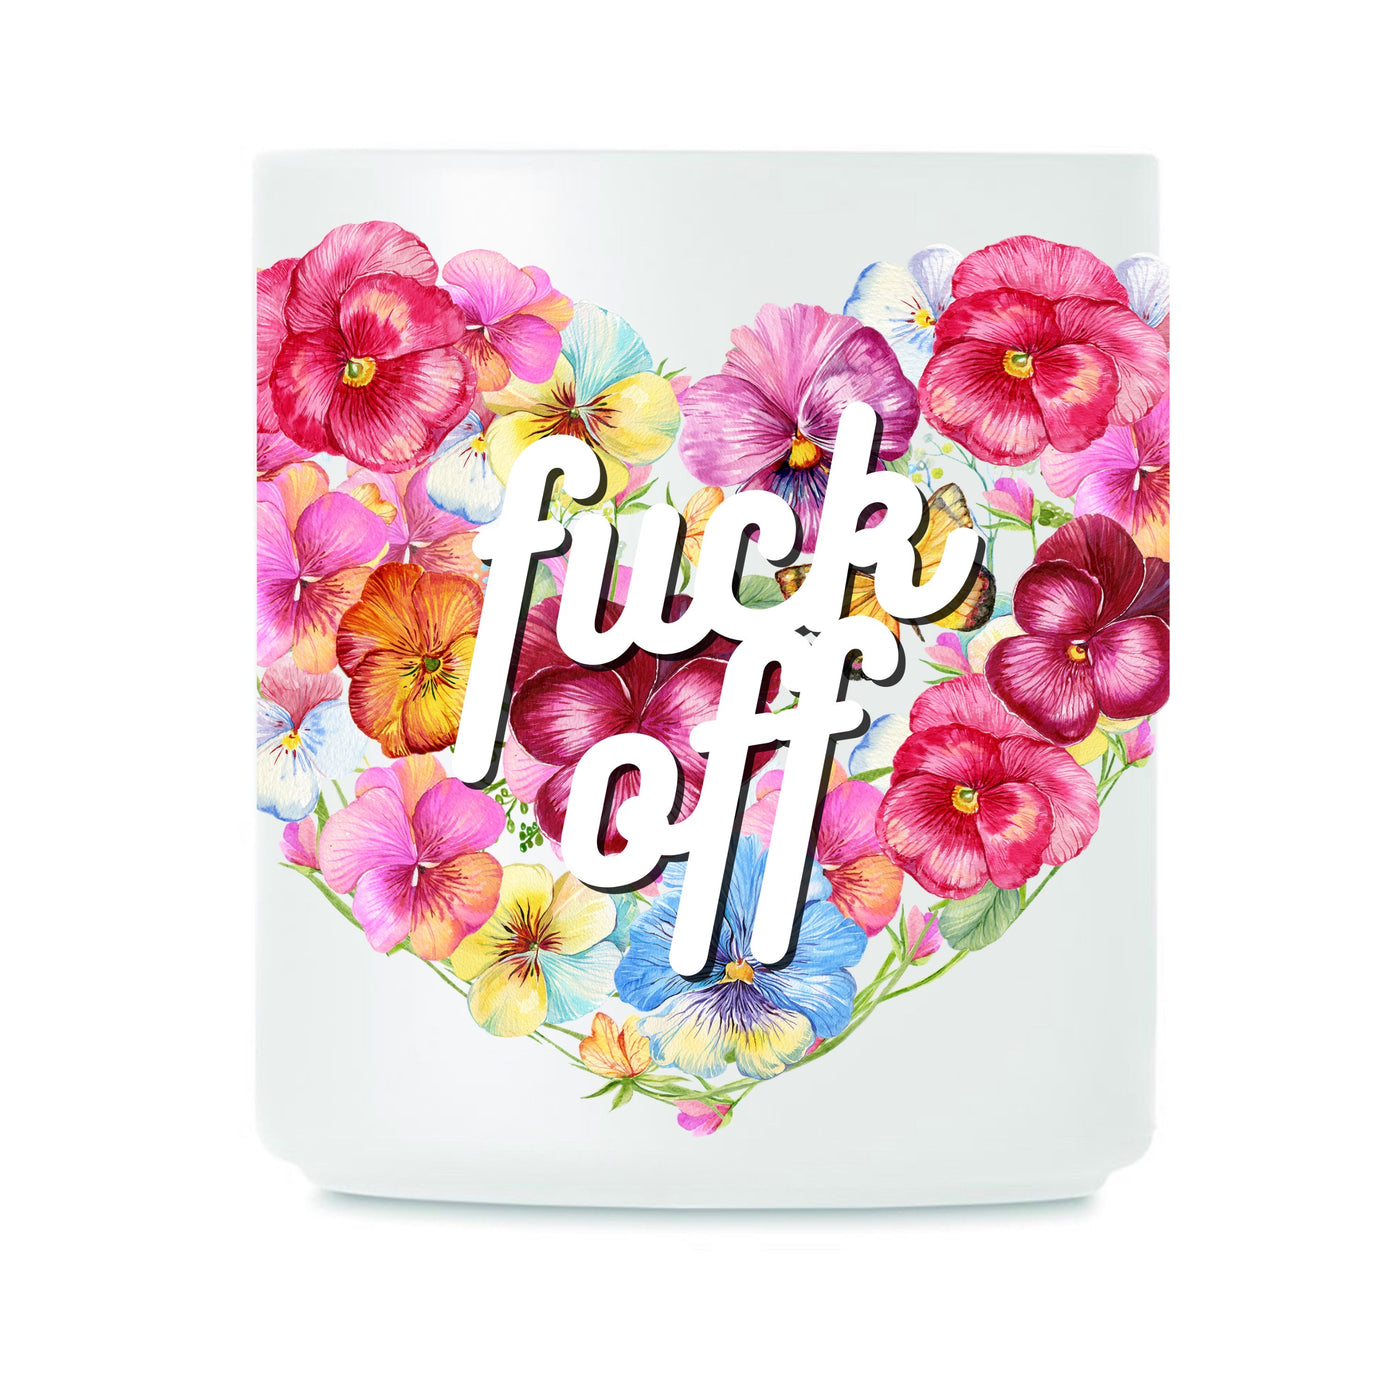 Floral "Fuck Off" 11oz Mug